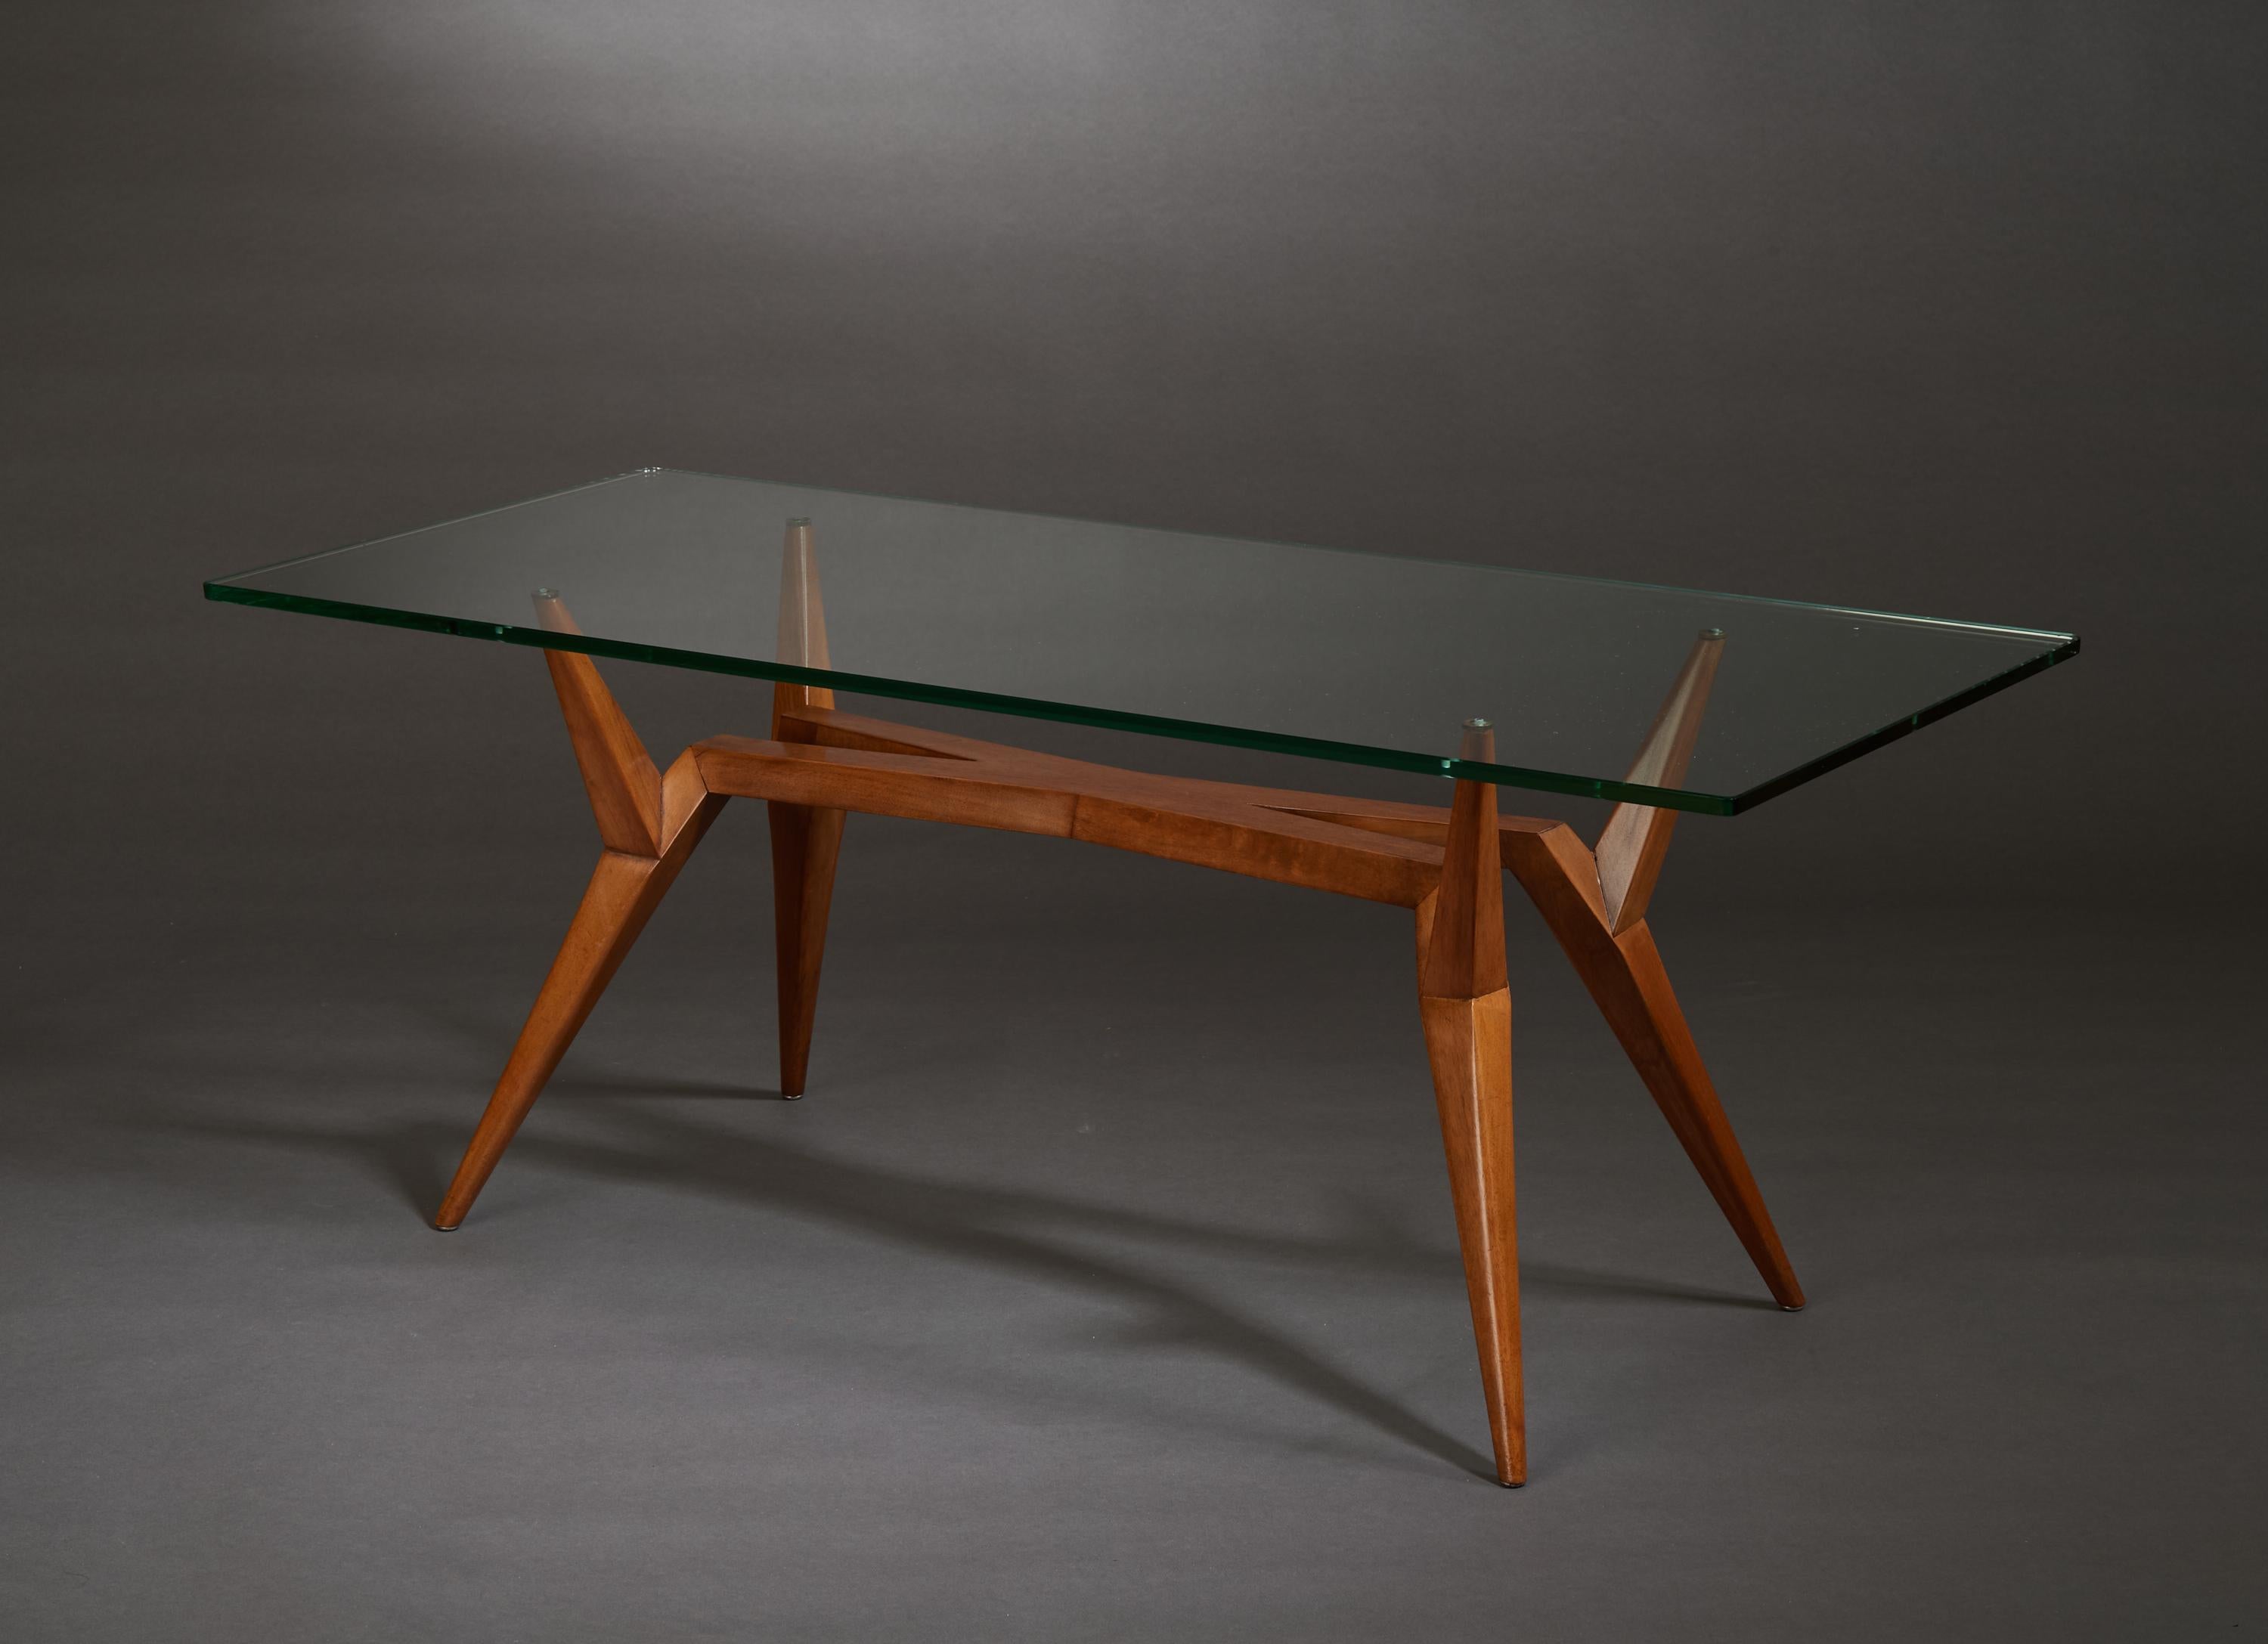 Pierluigi Giordani, (1924-2011)

Une remarquable table basse géométrique de Pierluigi Giordani, le maître architecte et designer bolonais. Une base graphique et allongée en poirier, d'une vitalité singulière, se détache d'un centre en forme de X.